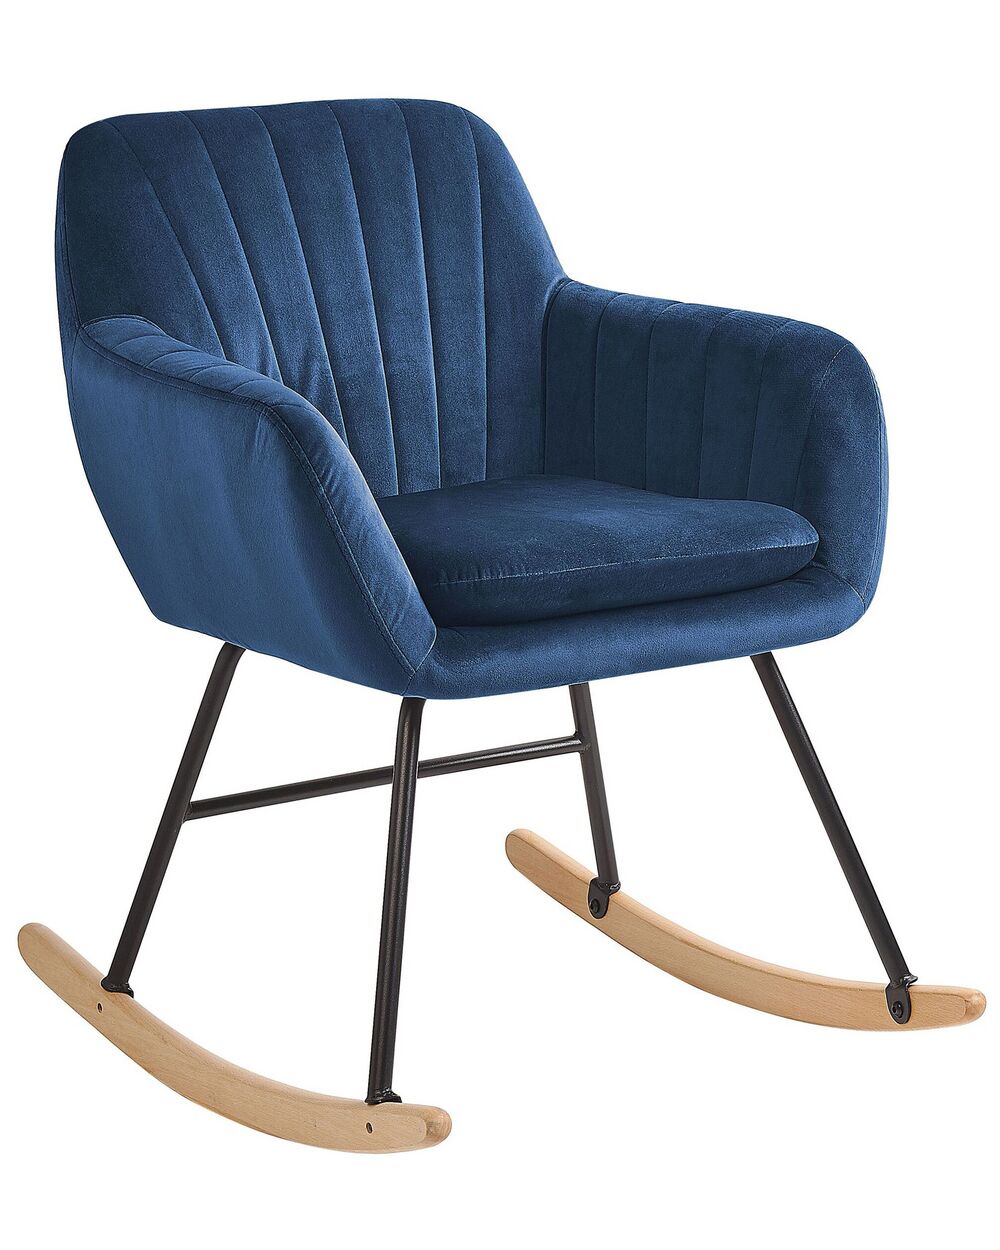 ROKIN Sillón o silla con reposabrazos diseño vintage terciopelo